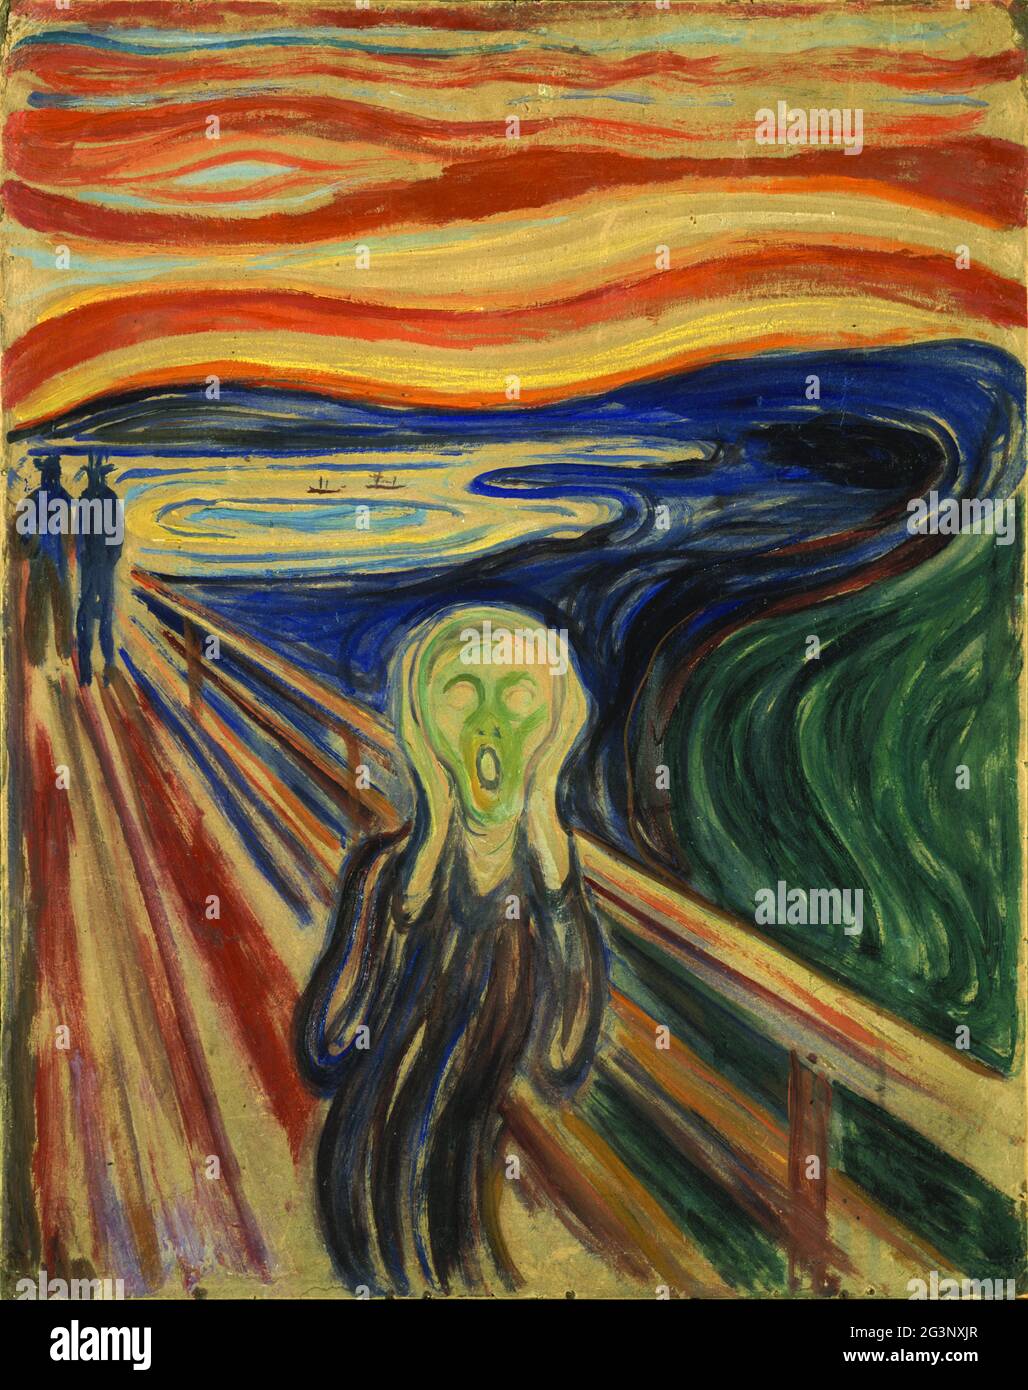 Titre: The Scream Créateur: Edvard Munch Date: 1893 Moyen: Huile, tempera et pastel sur carton Dimensions: 91 x 73.5cm lieu: Nasjonalgeriet, Oslo, Norvège Banque D'Images